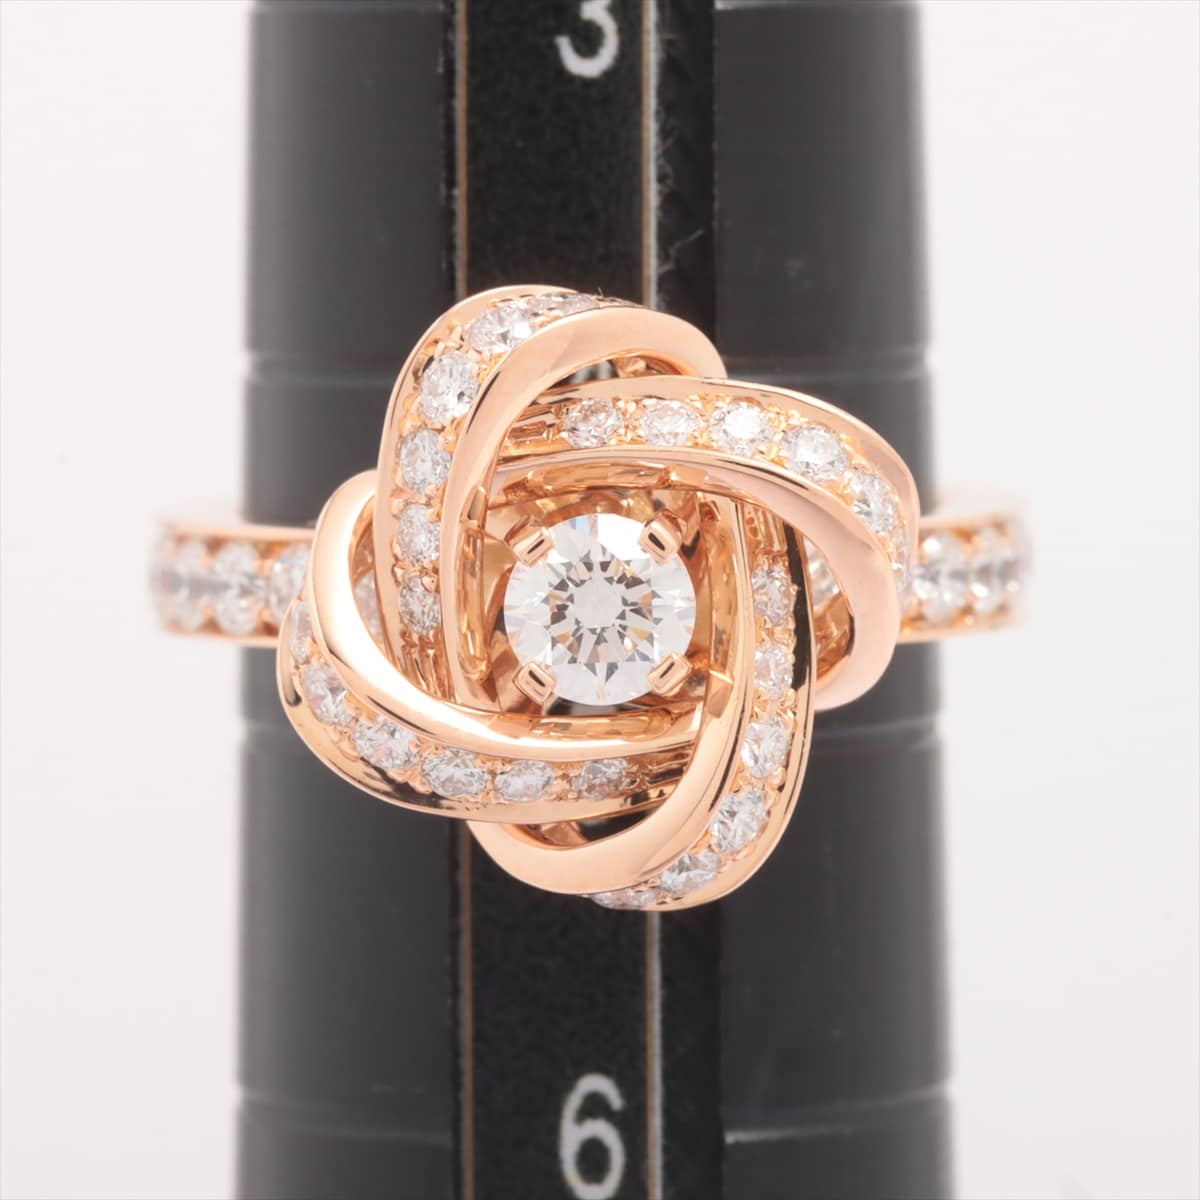 Boucheron Ava Pivoine diamond rings 750(PG) 4.4g 45 Diamond about 3 in diameter.51mm